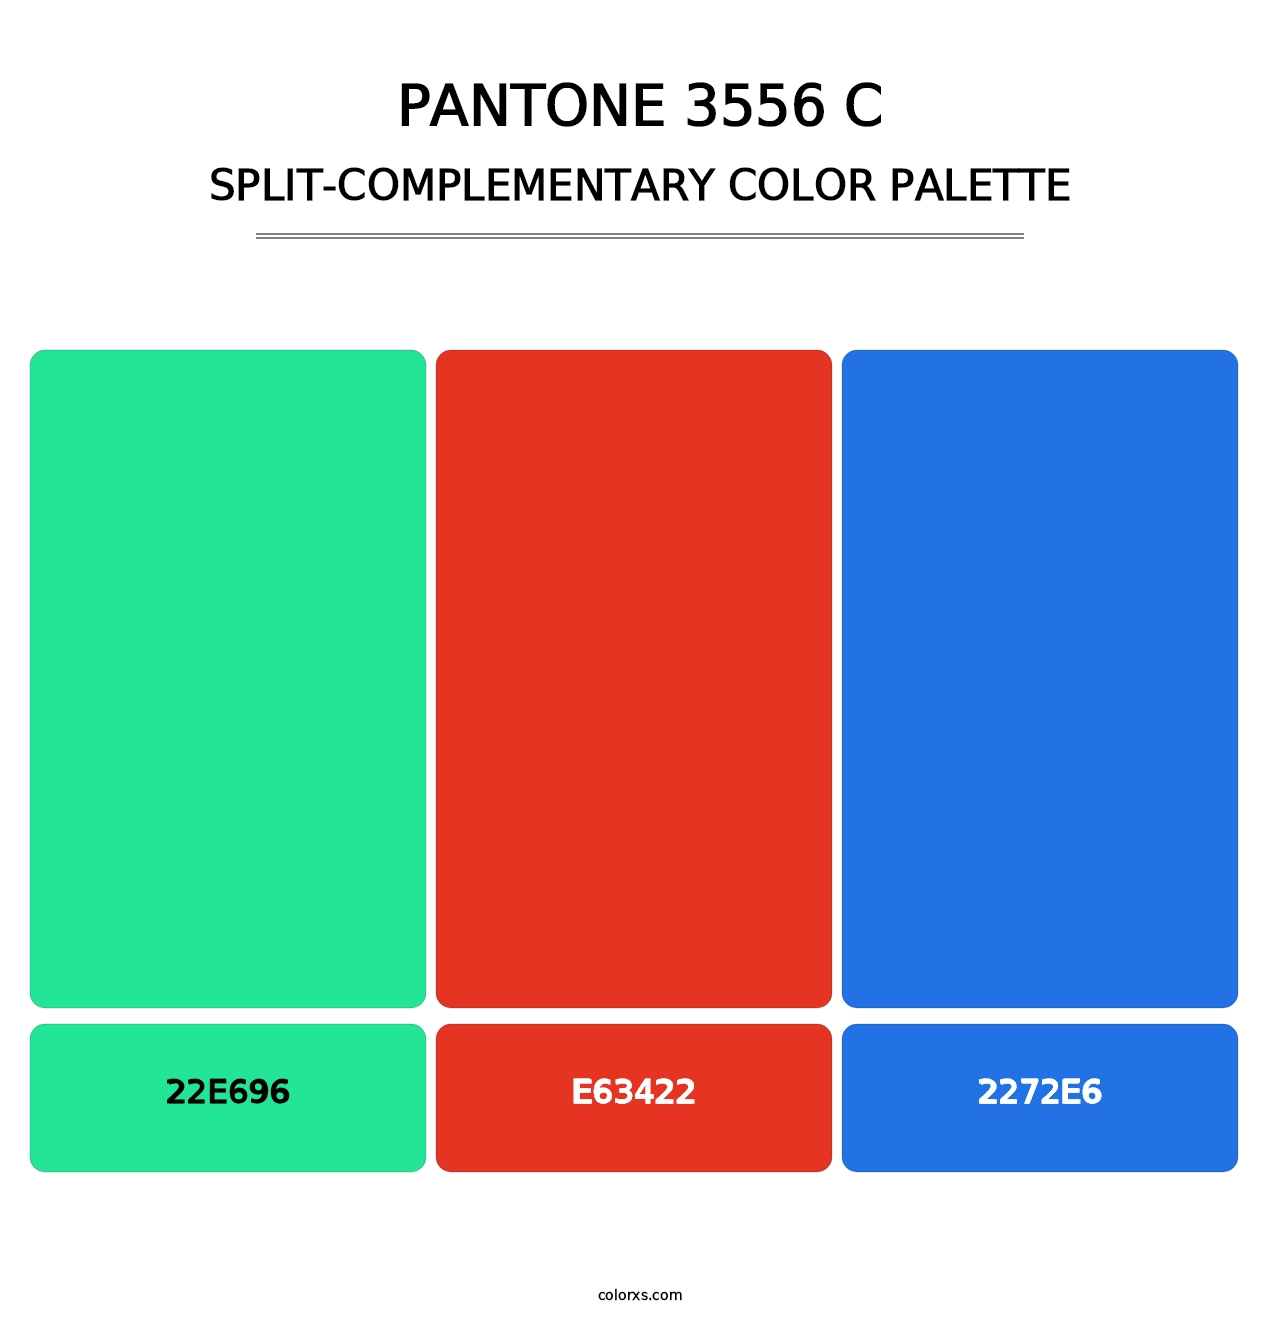 PANTONE 3556 C - Split-Complementary Color Palette